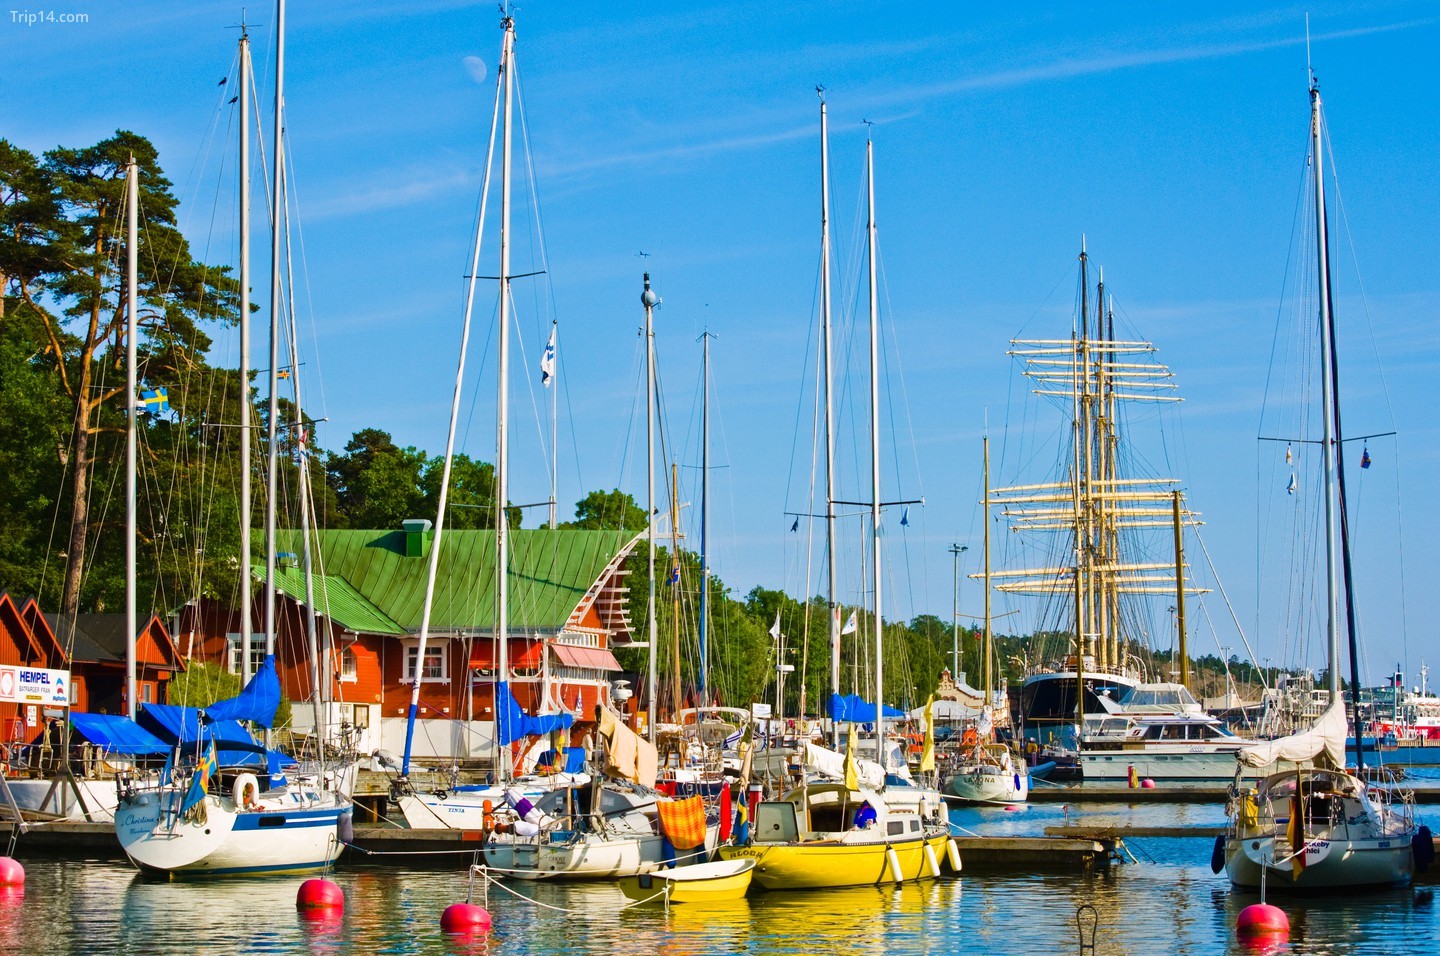 Đến Mariehamn khám phá những chiếc du thuyền nhấp nhô trên bến du thuyền